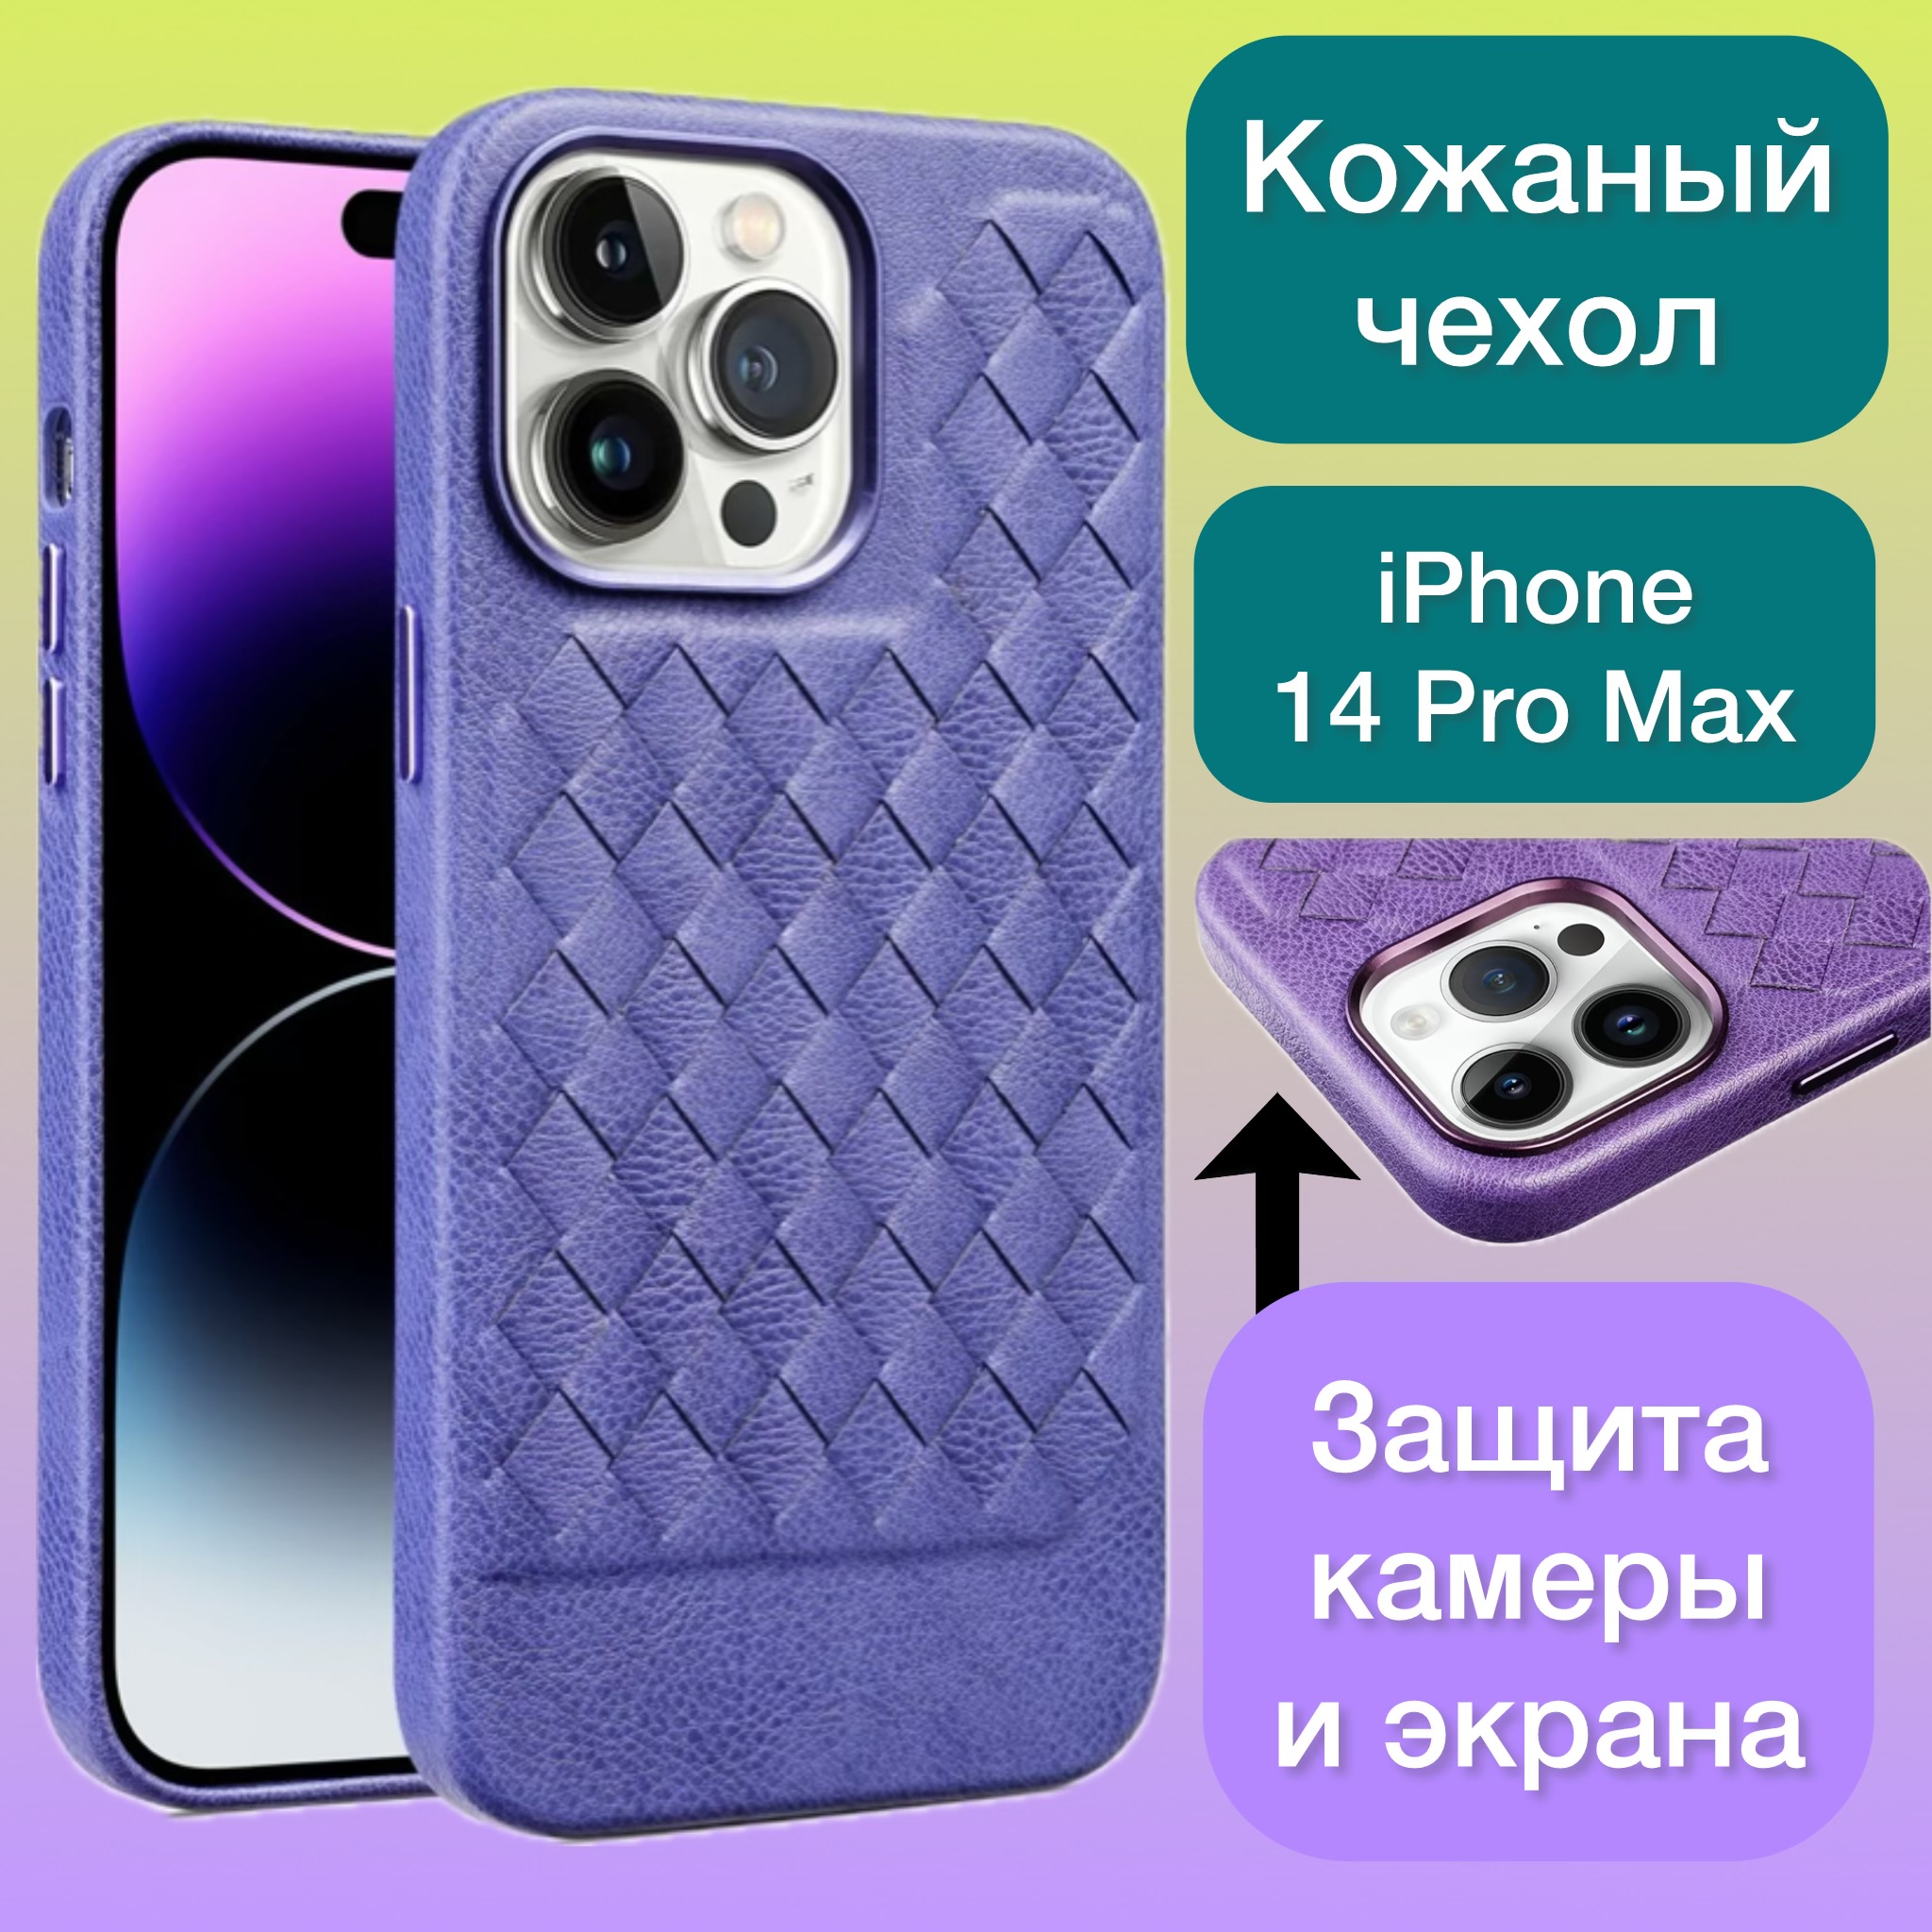 Кожаный чехол на iPhone 14 Pro Max плетеный Aimo для Айфон 14 Про Макс цвет сиреневый